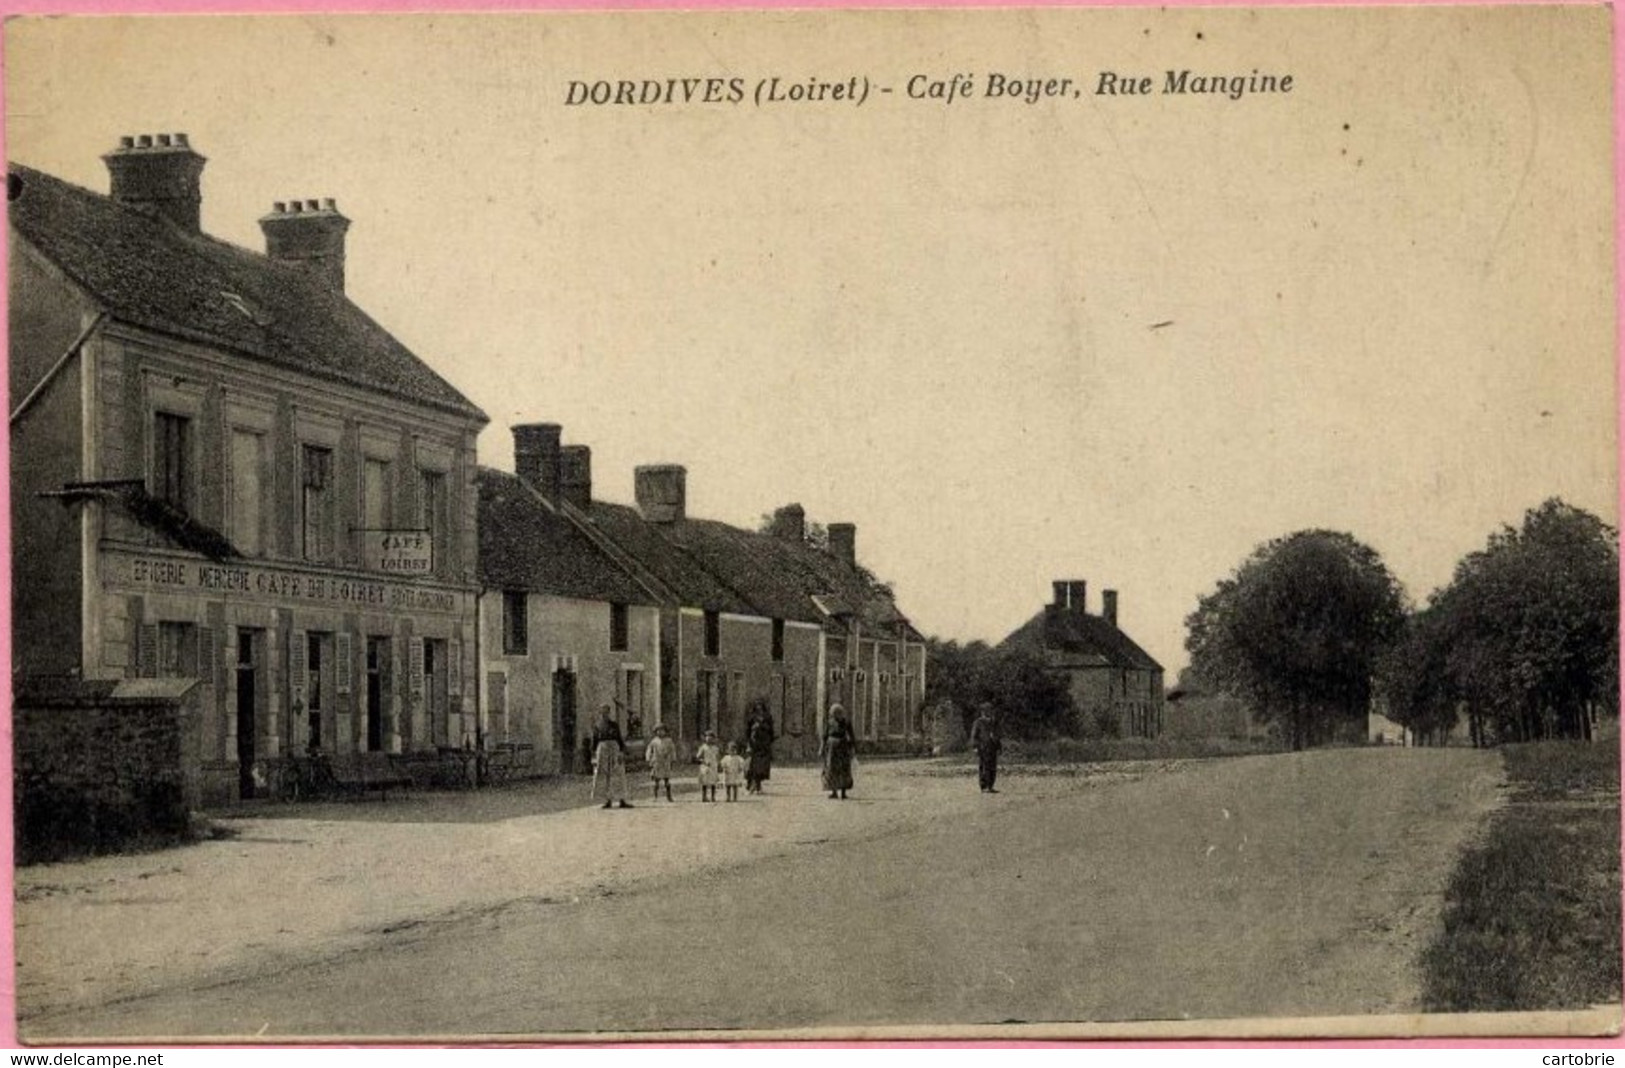 Dépt 45 - DORDIVES - CAFÉ Du LOIRET - Café Boyer, Rue Mangine - Animée - Route Bleue Nationale 7 - Dordives